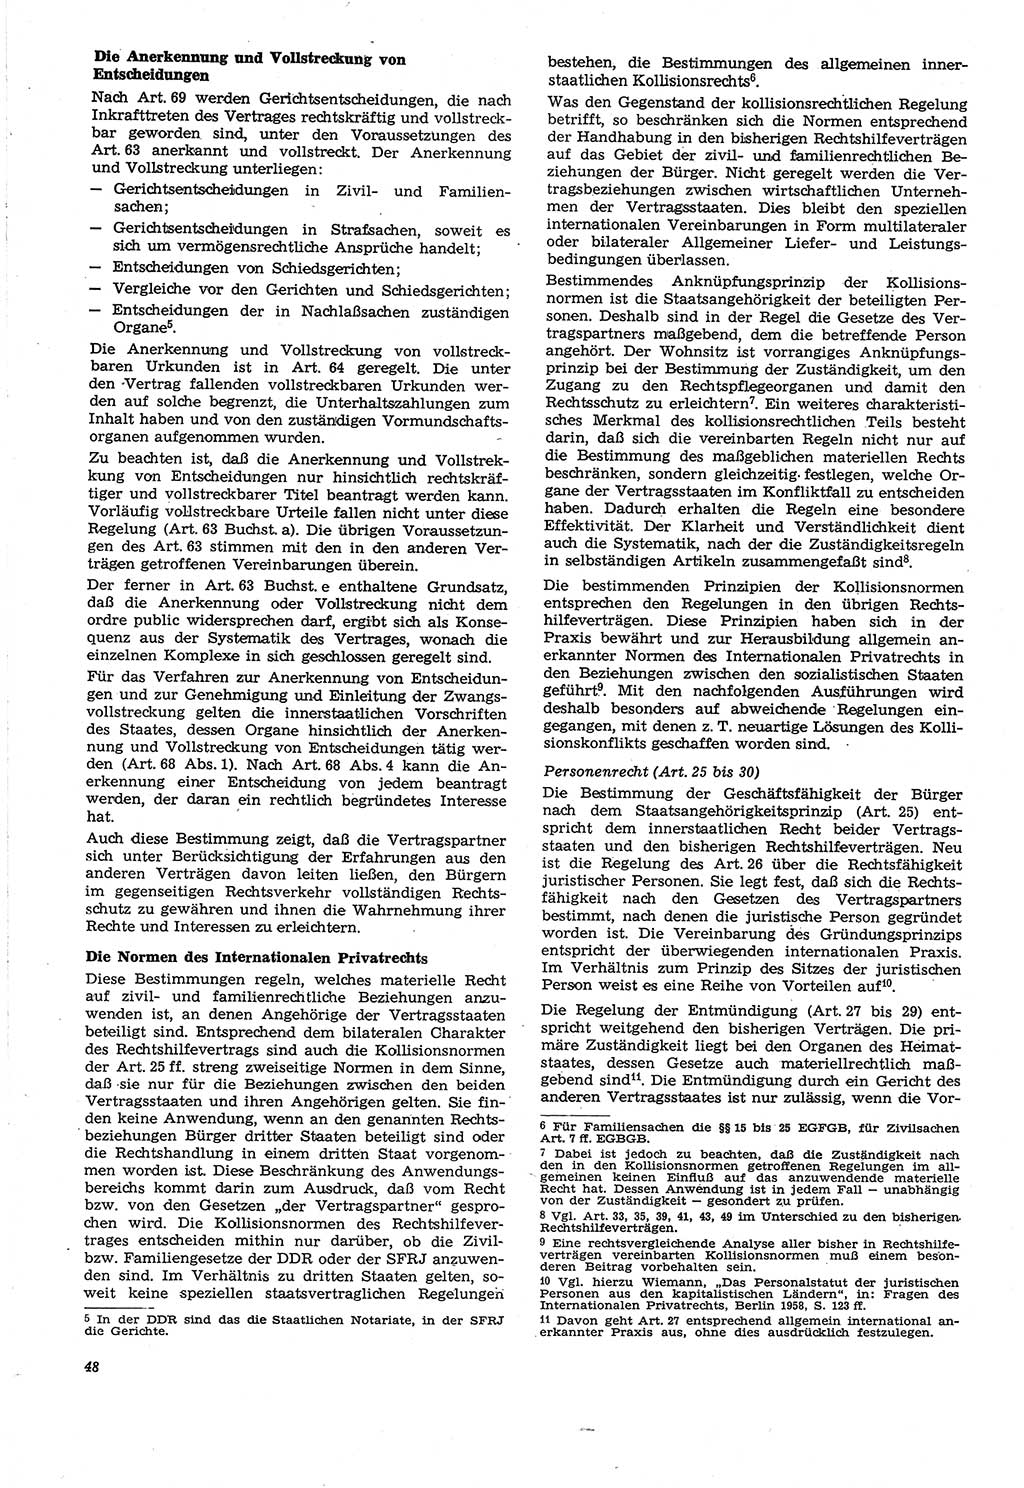 Neue Justiz (NJ), Zeitschrift für Recht und Rechtswissenschaft [Deutsche Demokratische Republik (DDR)], 21. Jahrgang 1967, Seite 48 (NJ DDR 1967, S. 48)